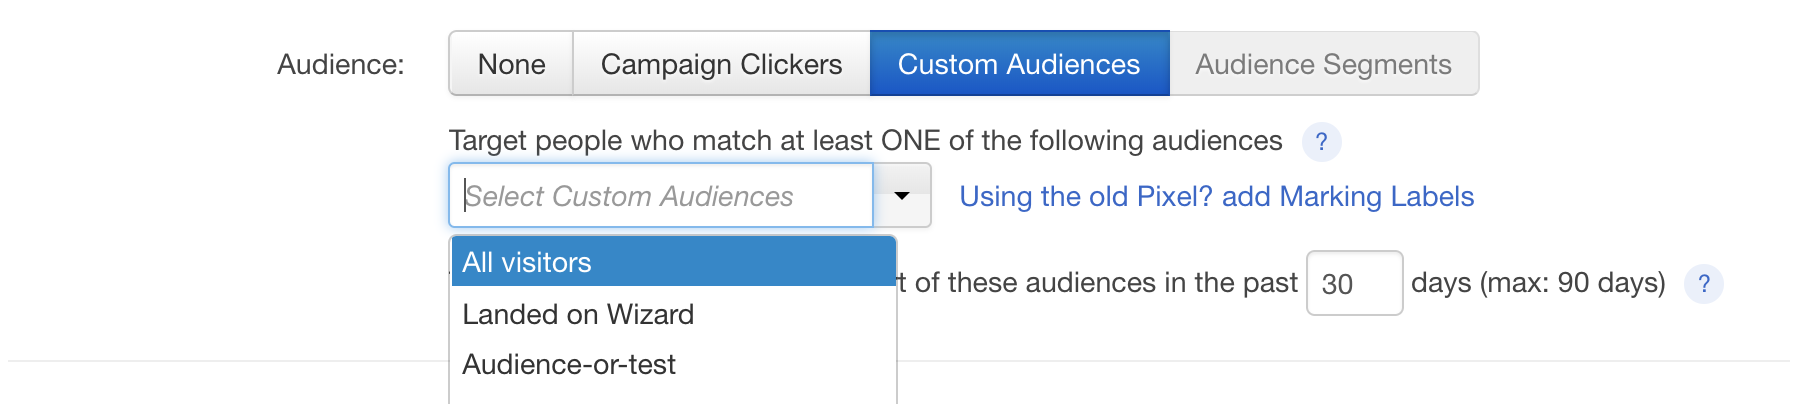 9-target-custom-audience.png